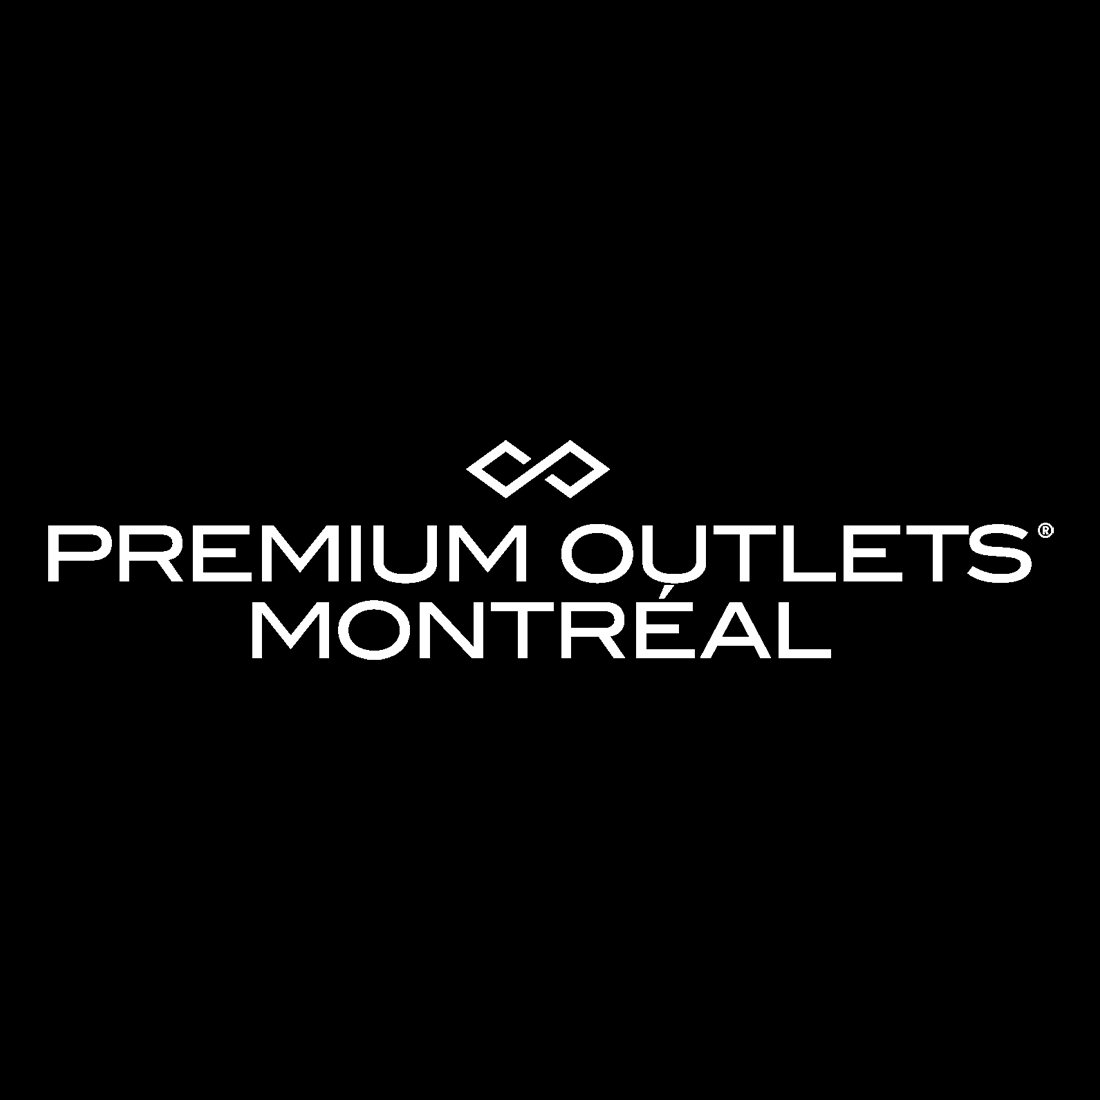 Premium Outlets Montréal